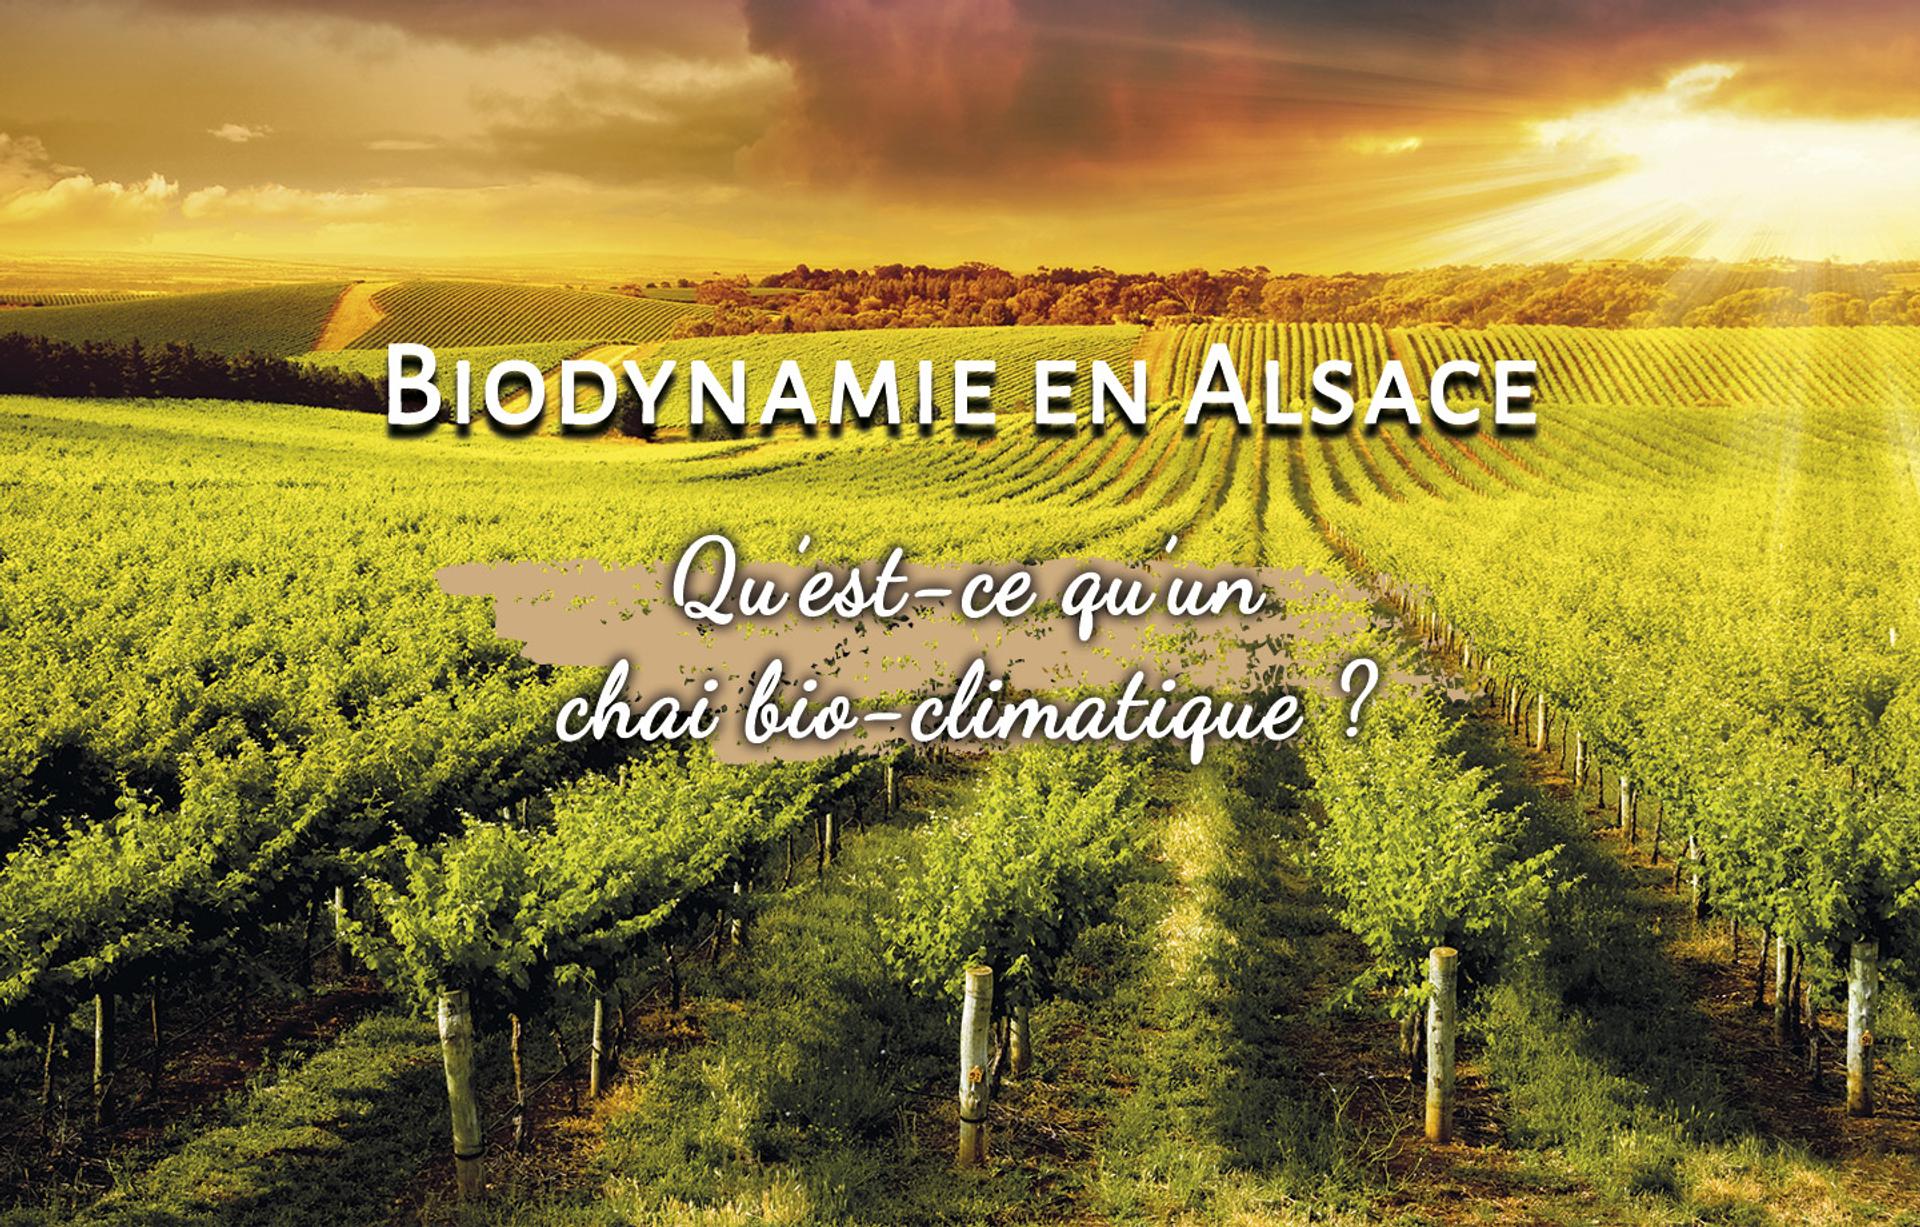 Biodynamie en Alsace, qu'est ce qu'un chai bio-climatique ?